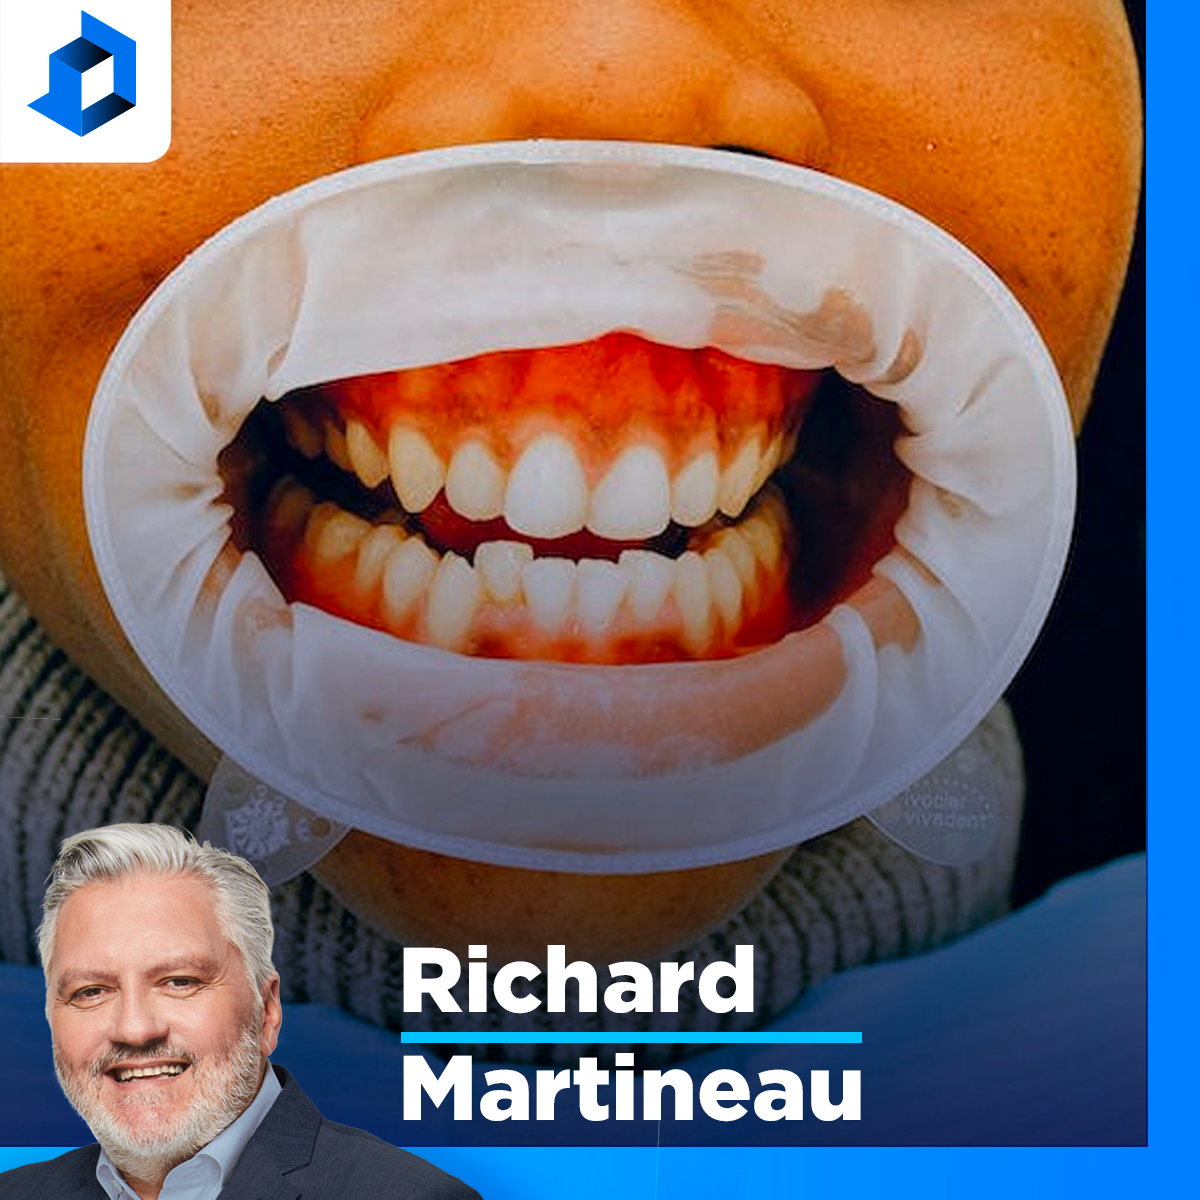 Brossage de dents : «S’essuyer après être allé aux toilettes, c’est la job des profs ça aussi!», dit Martineau